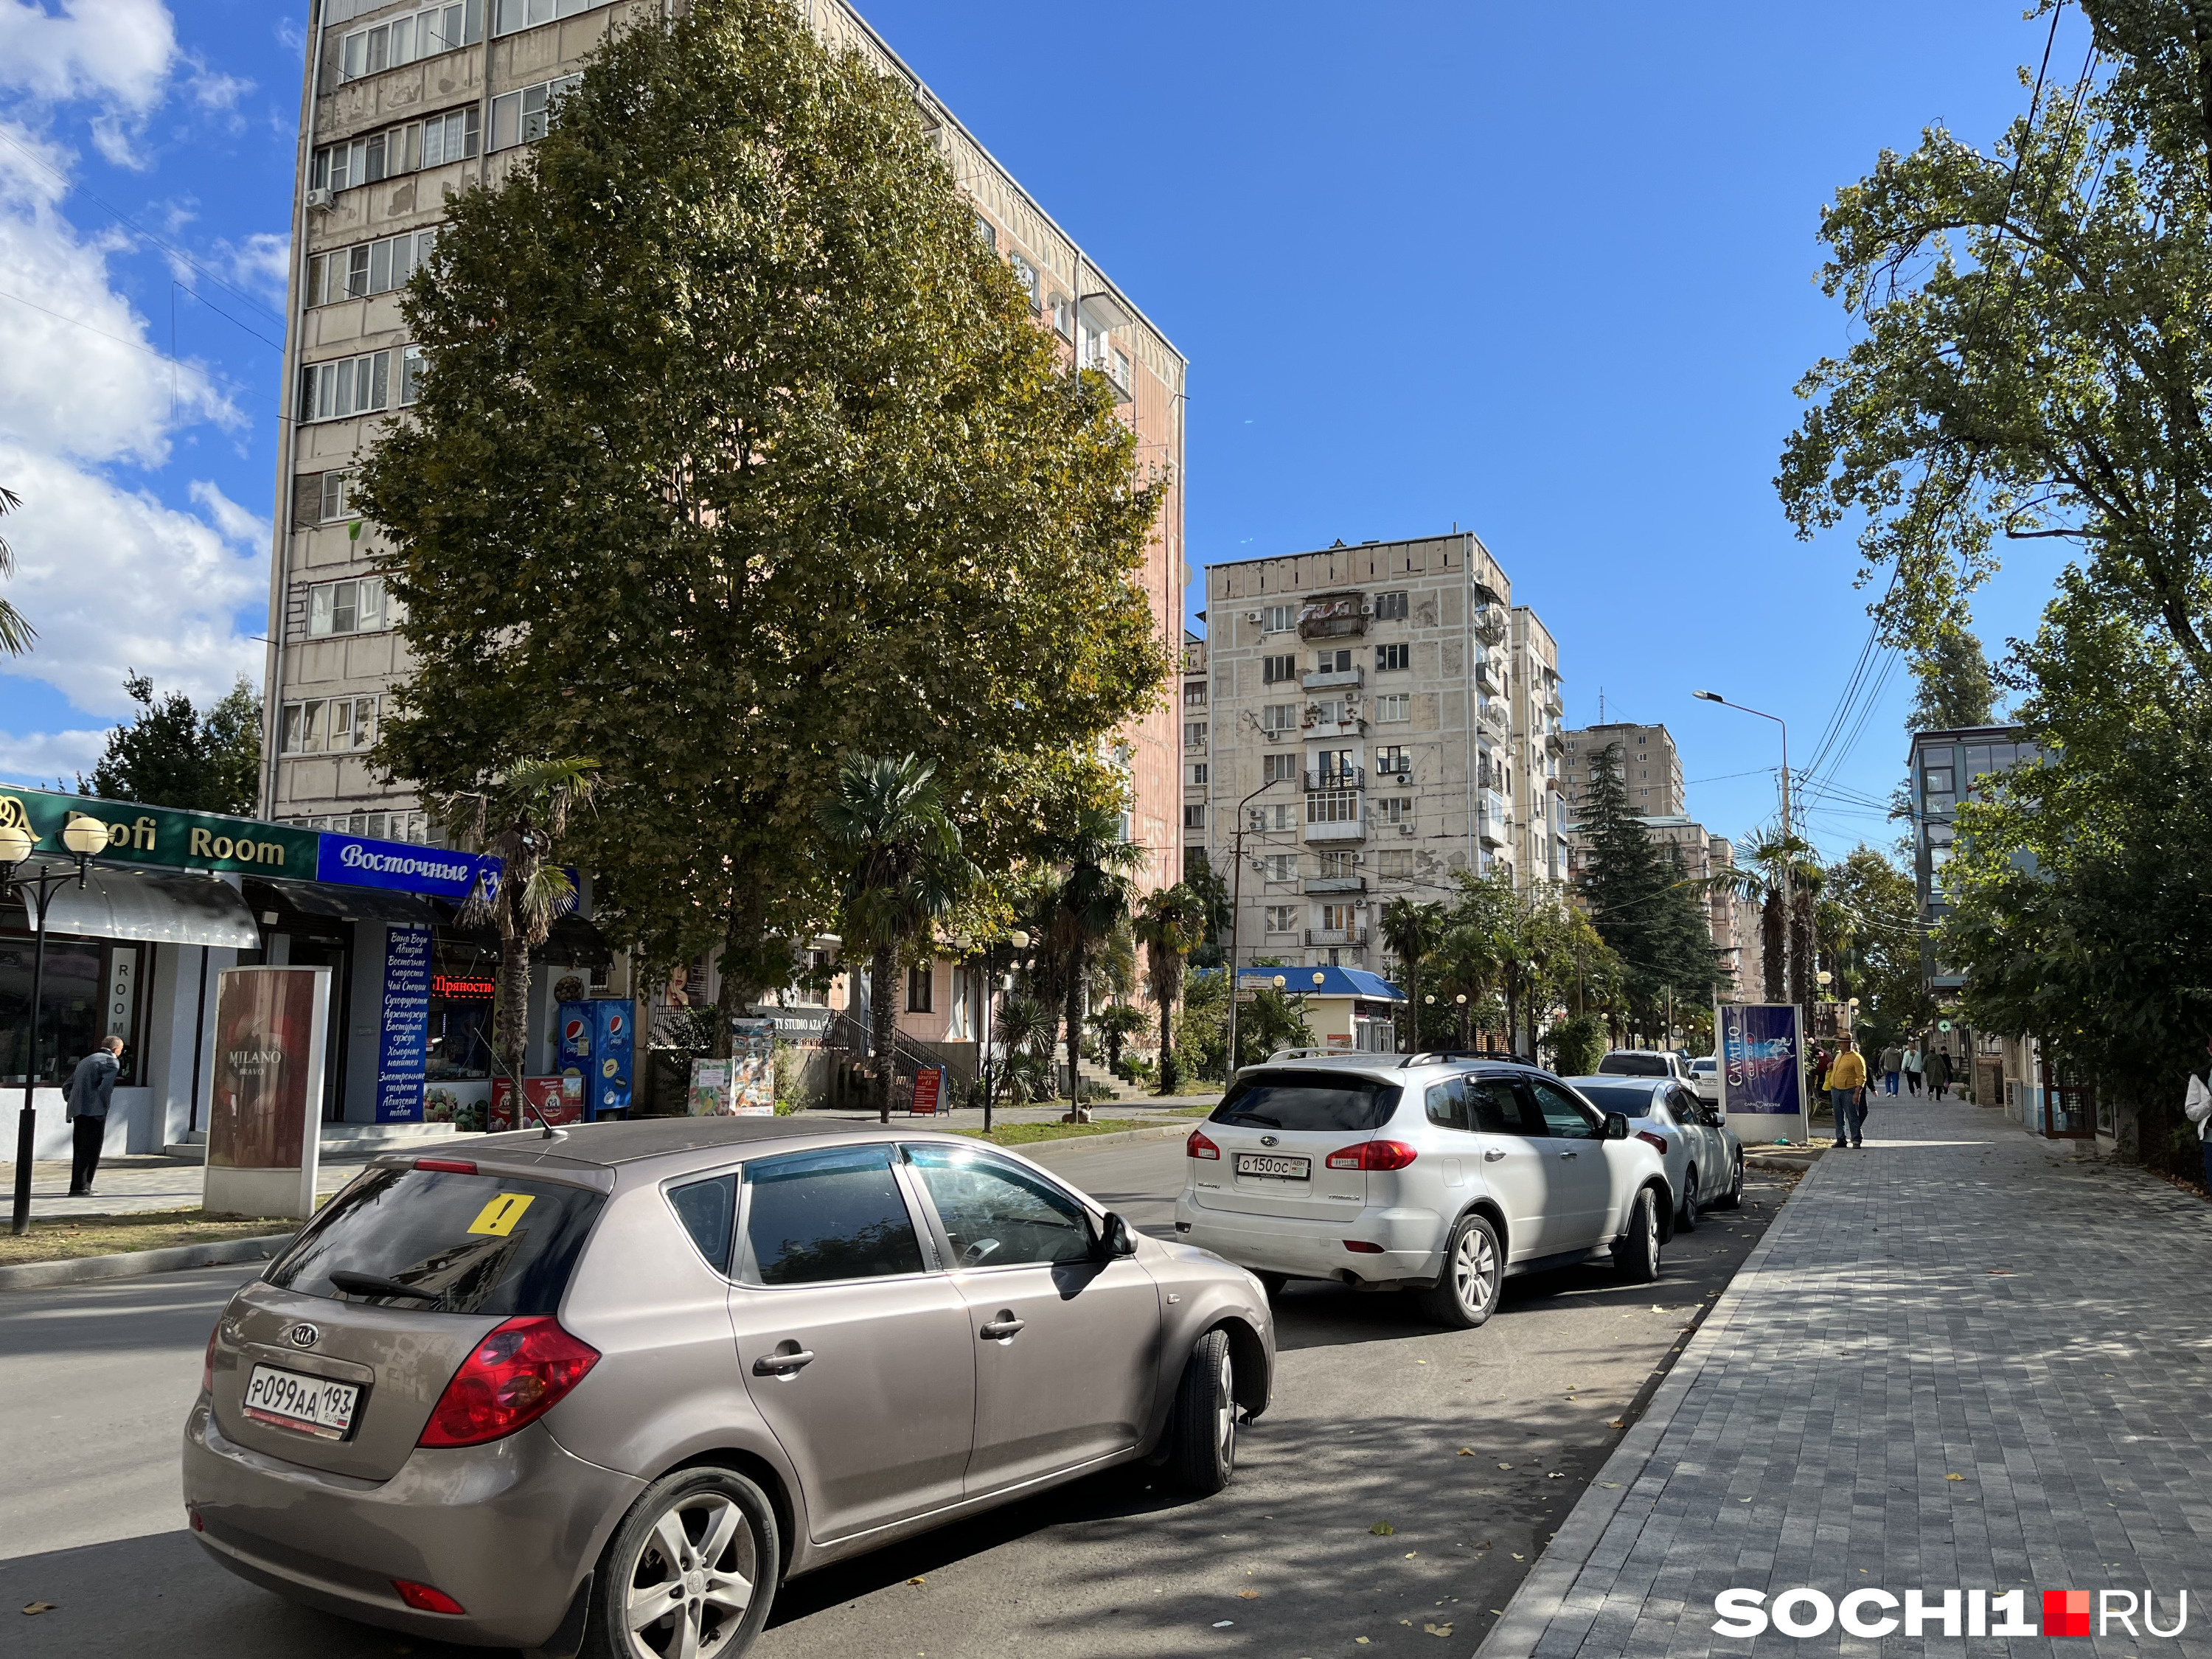 Коммерческую недвижимость купить можно, но правильно оформленной немного в Абхазии